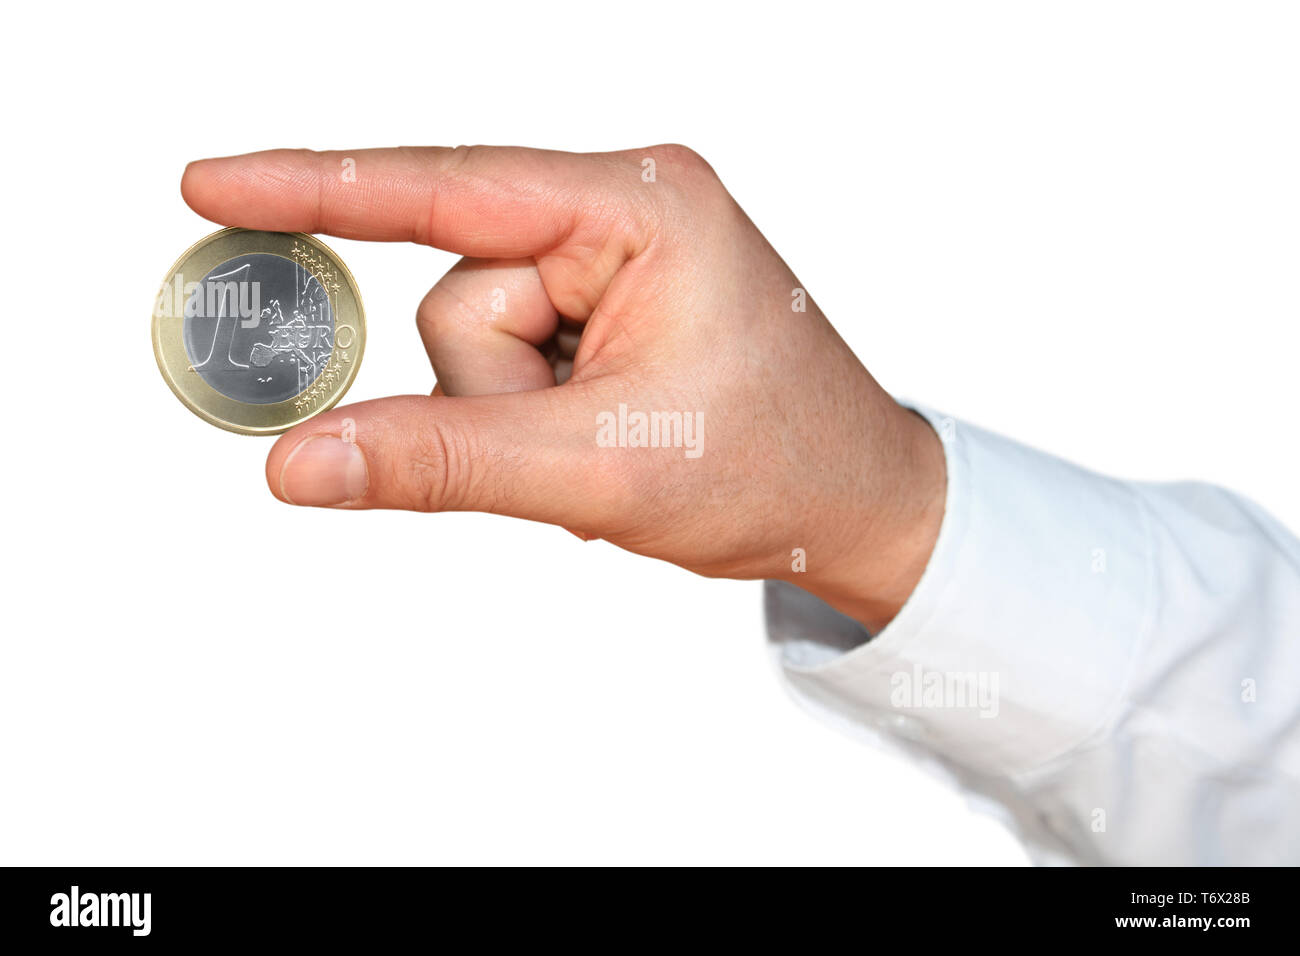 La série des gestes, des mains courantes, euro coin Banque D'Images